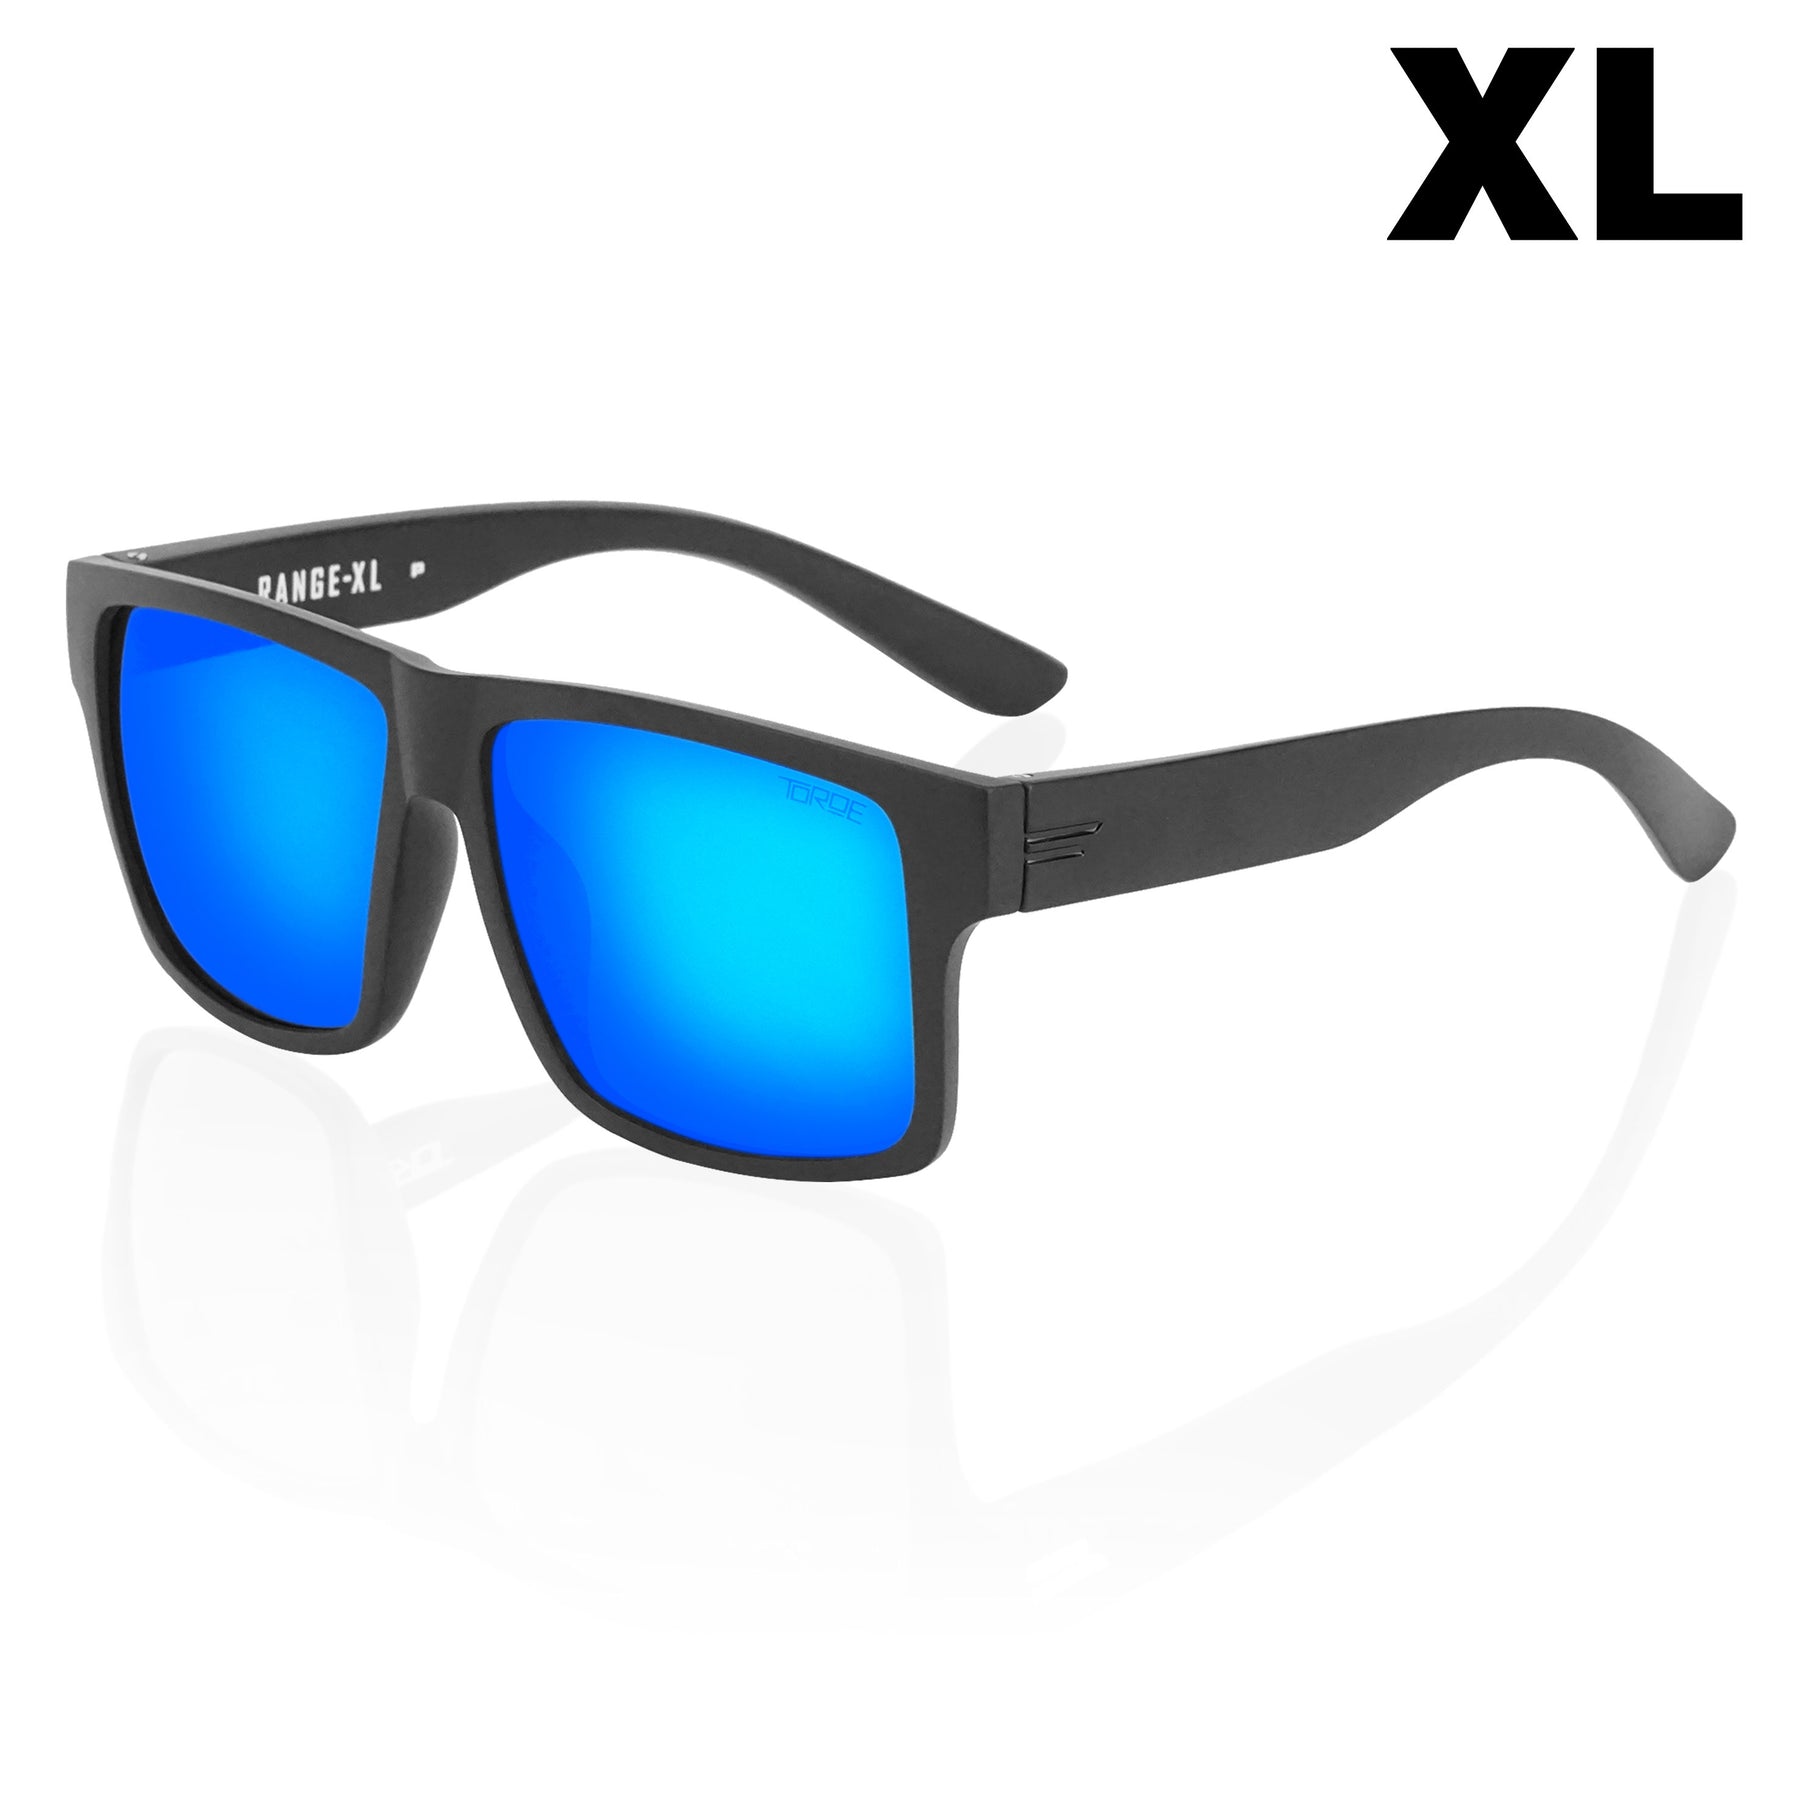 EXTRA-LARGE Range XL Polarized Sunglasses for BIG DAWGS – TOROE Performance  Eyewear